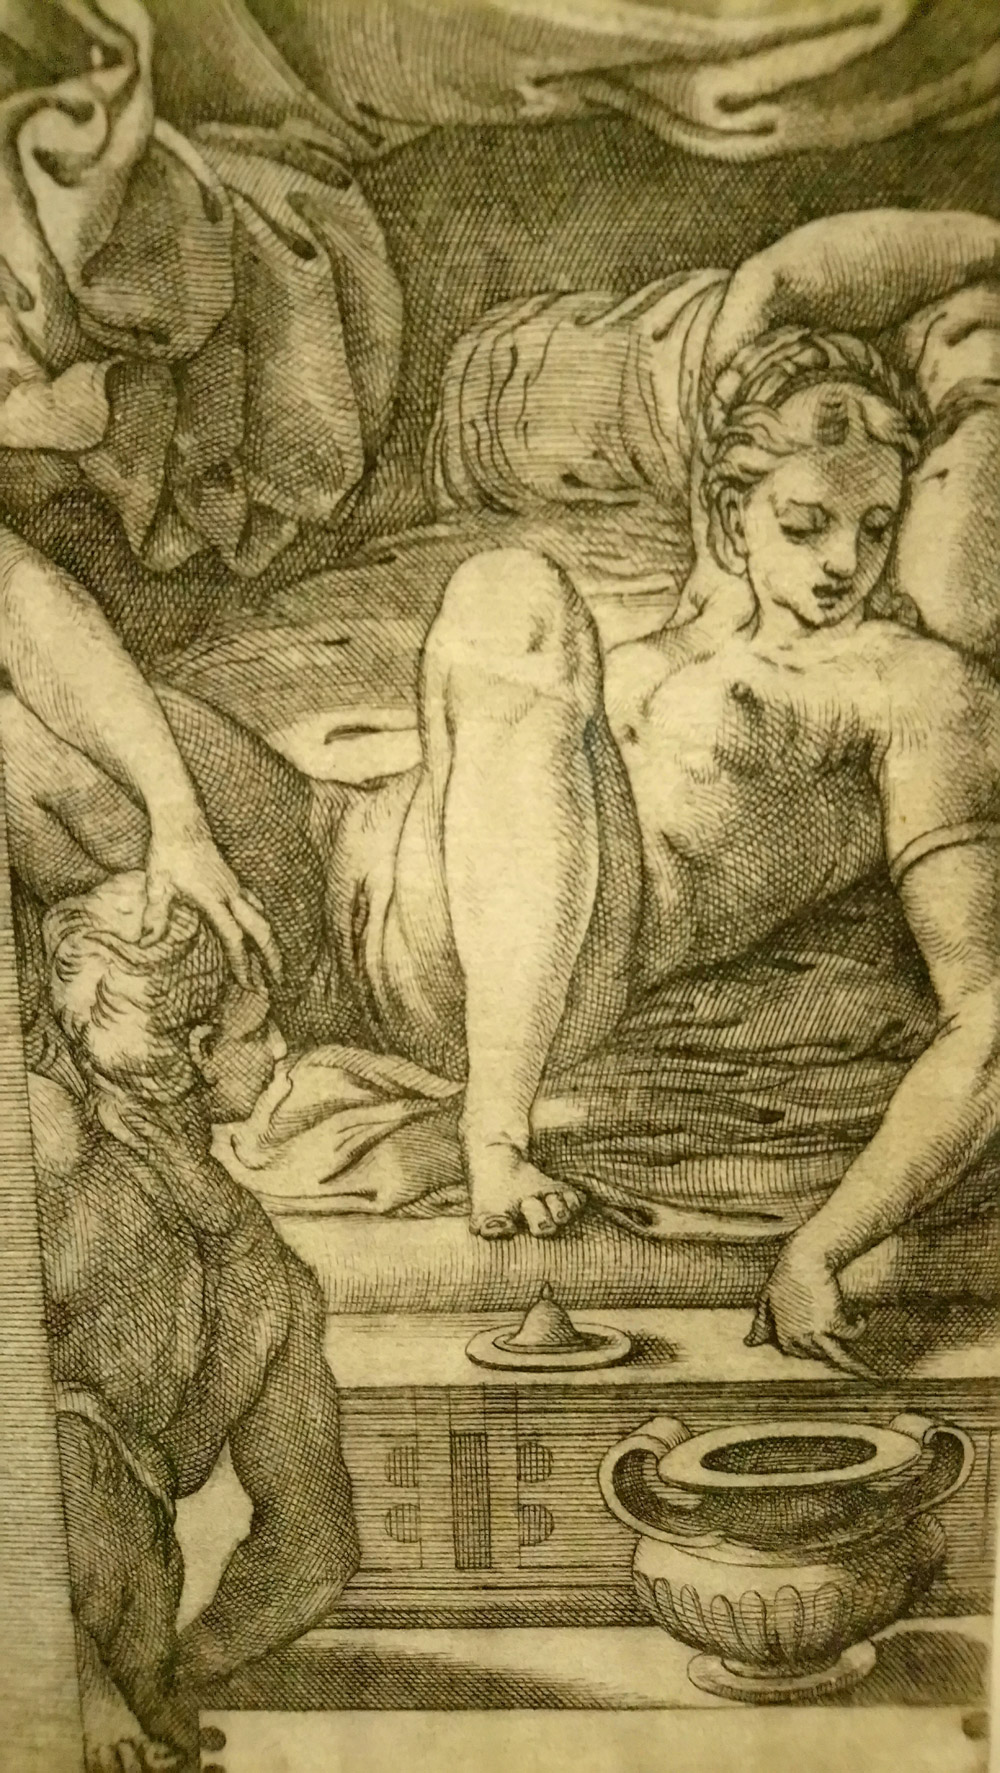 Giovanni Jacopo Caraglio da Perin del Vaga, Mercurio, Aglauro ed Erse, dettaglio (1527 circa; incisione a bulino, 211 x 134 mm; Amsterdam, Rijksmuseum)
